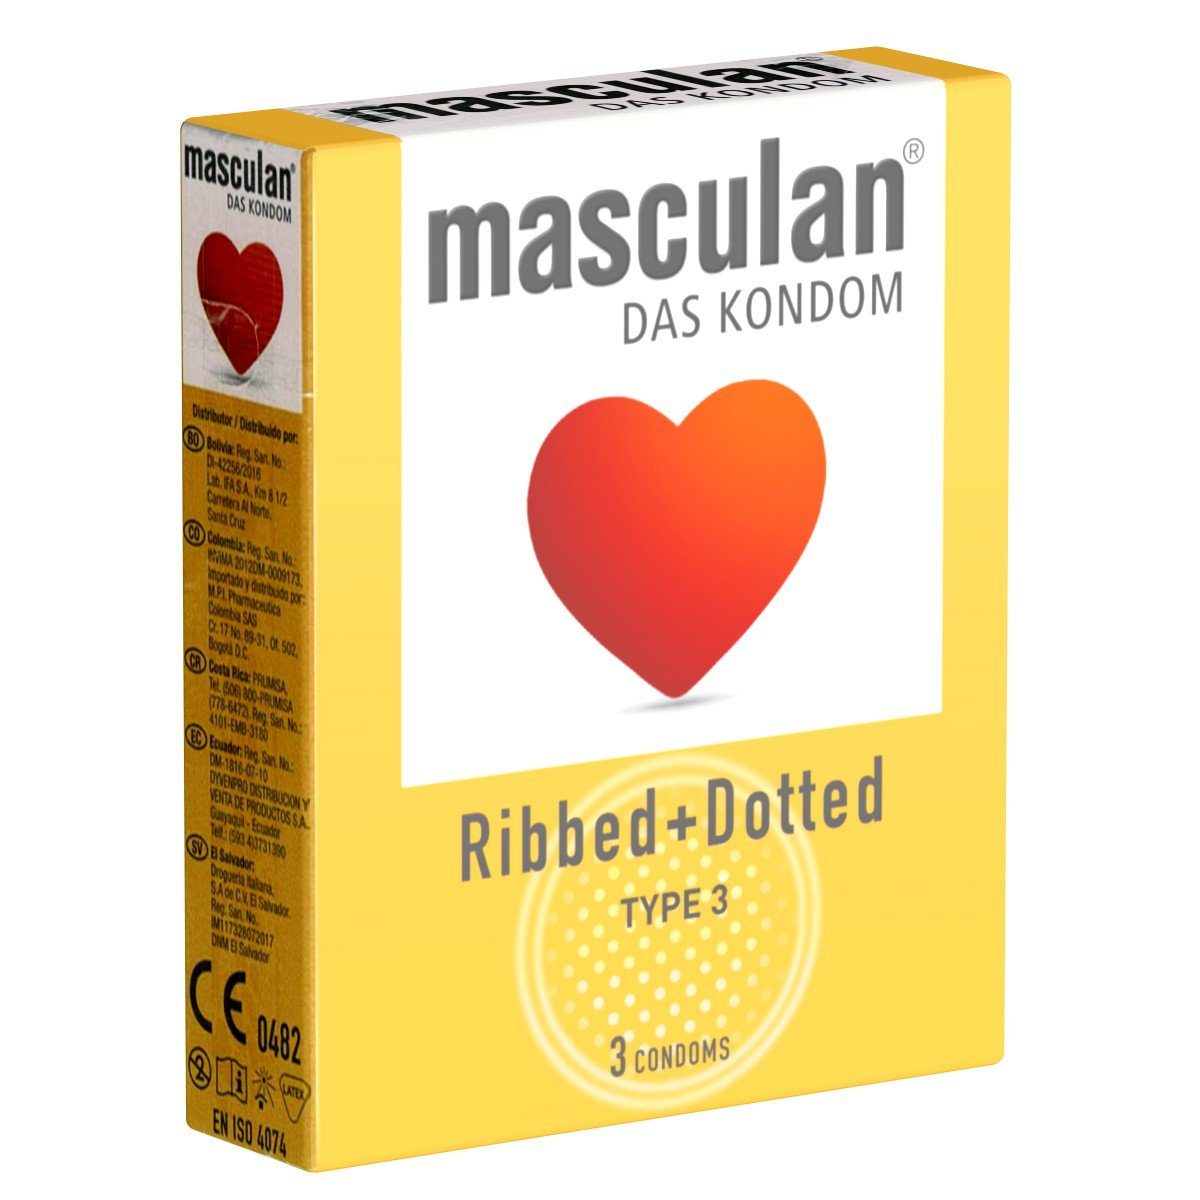 Masculan Kondome Typ 3 (ribbed/dotted) Packung mit, 3 St., stimulierende Qualitätskondome für intensive Momente, gerippt-genoppte Kondome für mehr Gefühl